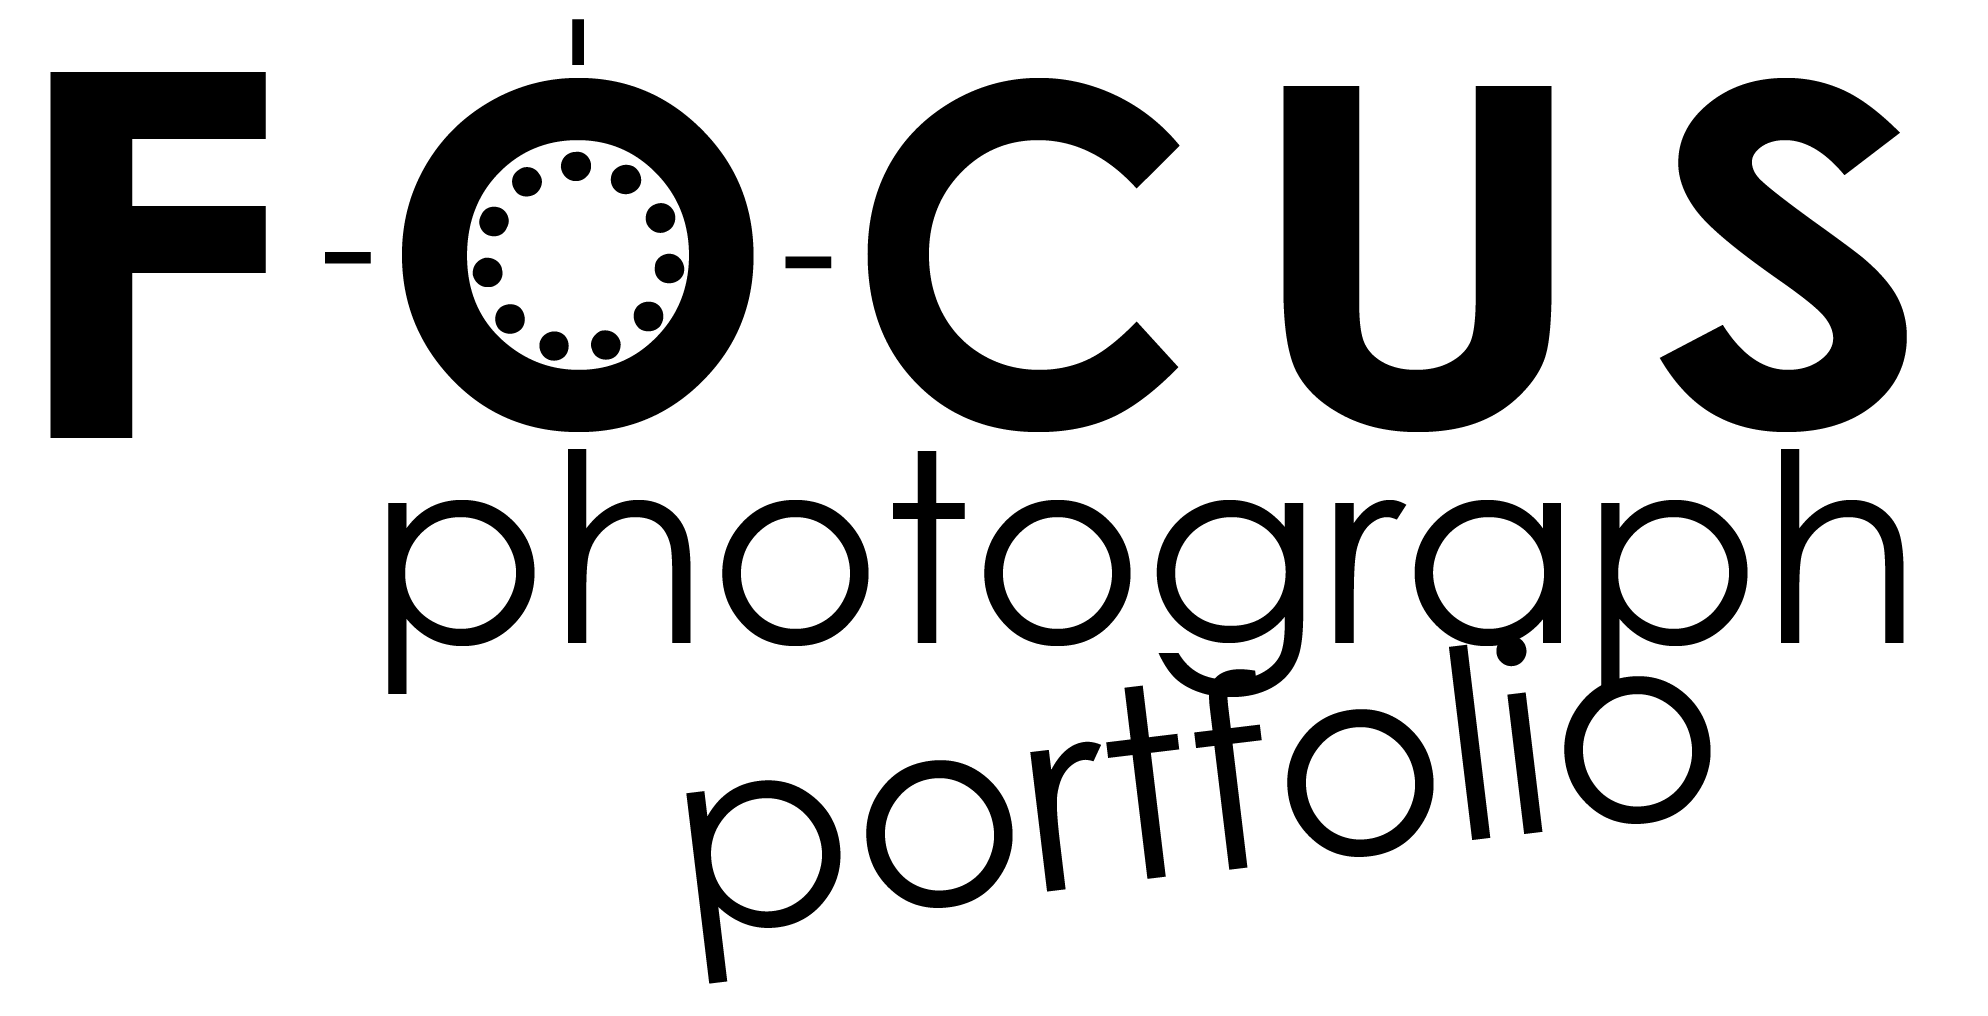 FOCUS portfolio